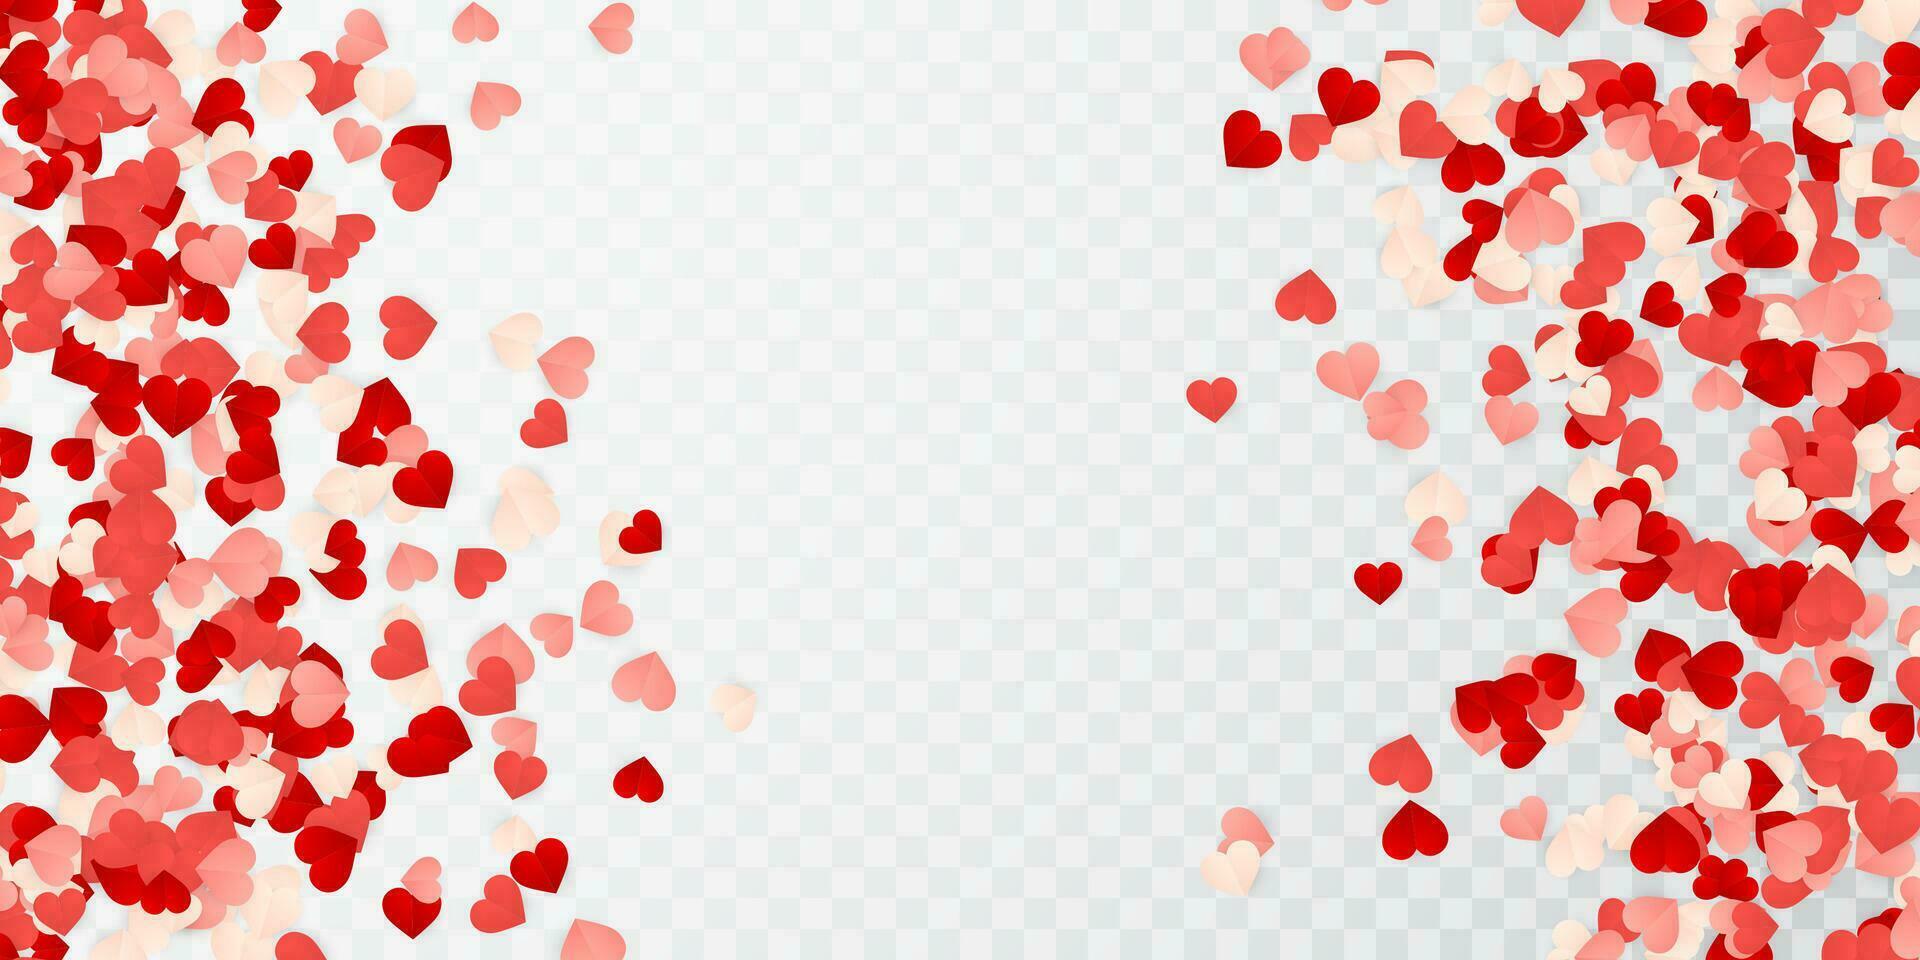 content valentines journée arrière-plan, papier rouge, rose et blanc Orange cœurs confettis. vecteur illustration